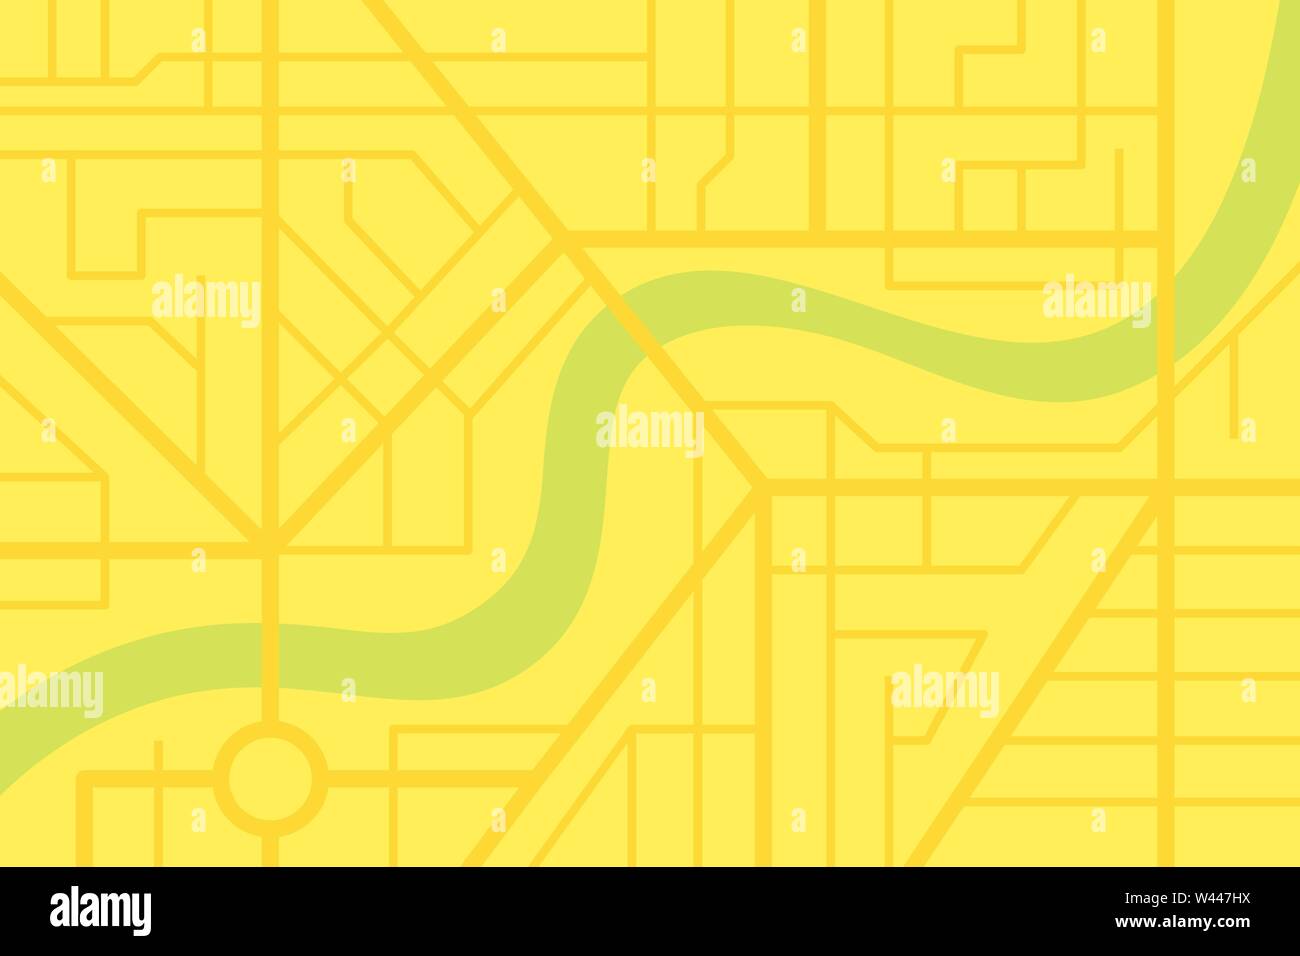 Stadt Stadtplan plan mit River. Vector gelb Stadt Farbe Abbildung: Schema Stock Vektor